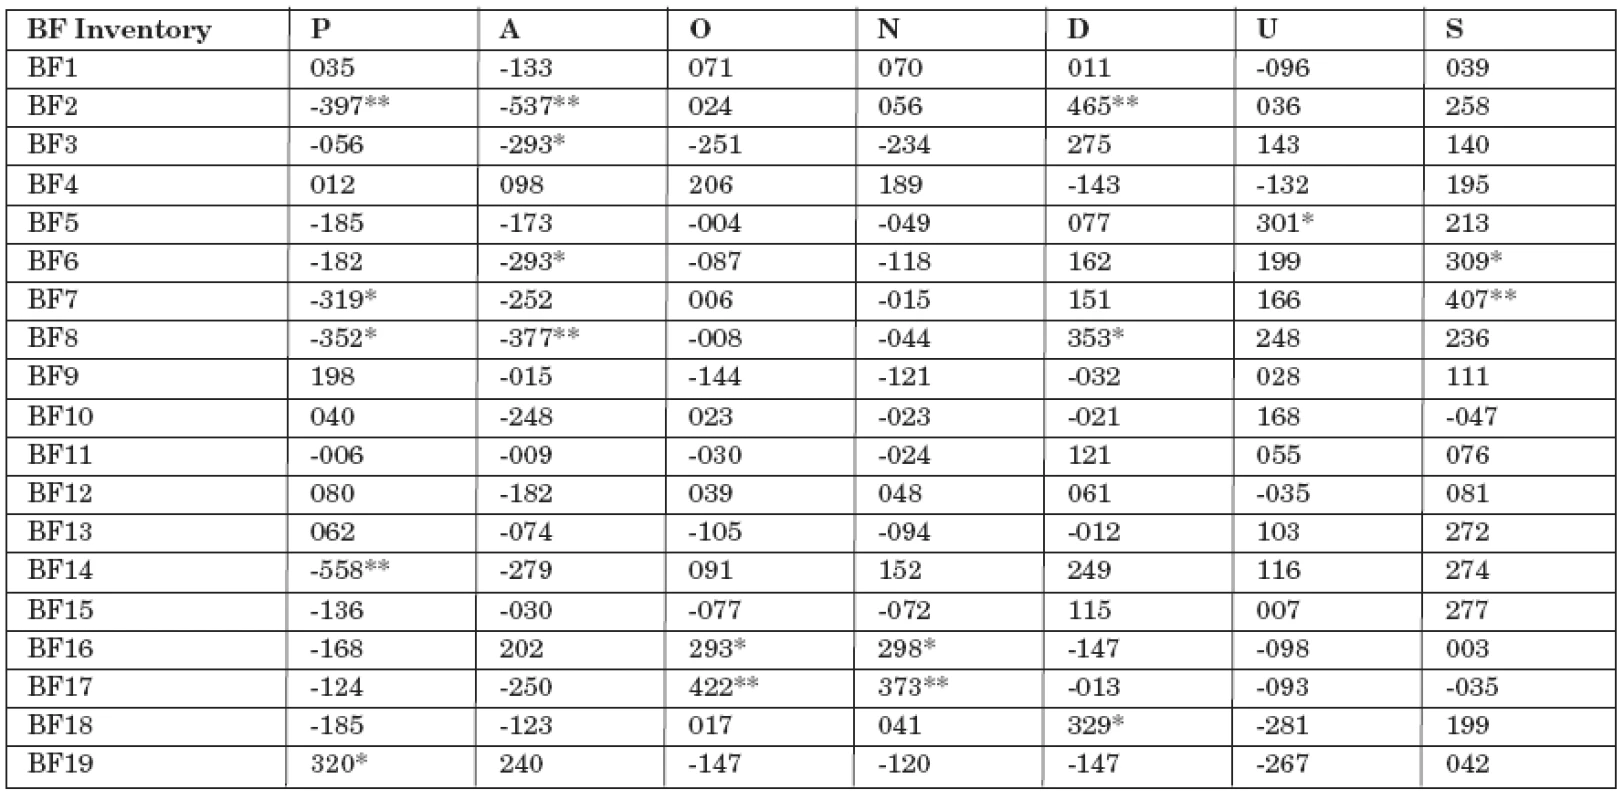 Korelace Bear-Fedio Inventory SUPOS pro temporální soubor (n = 46).